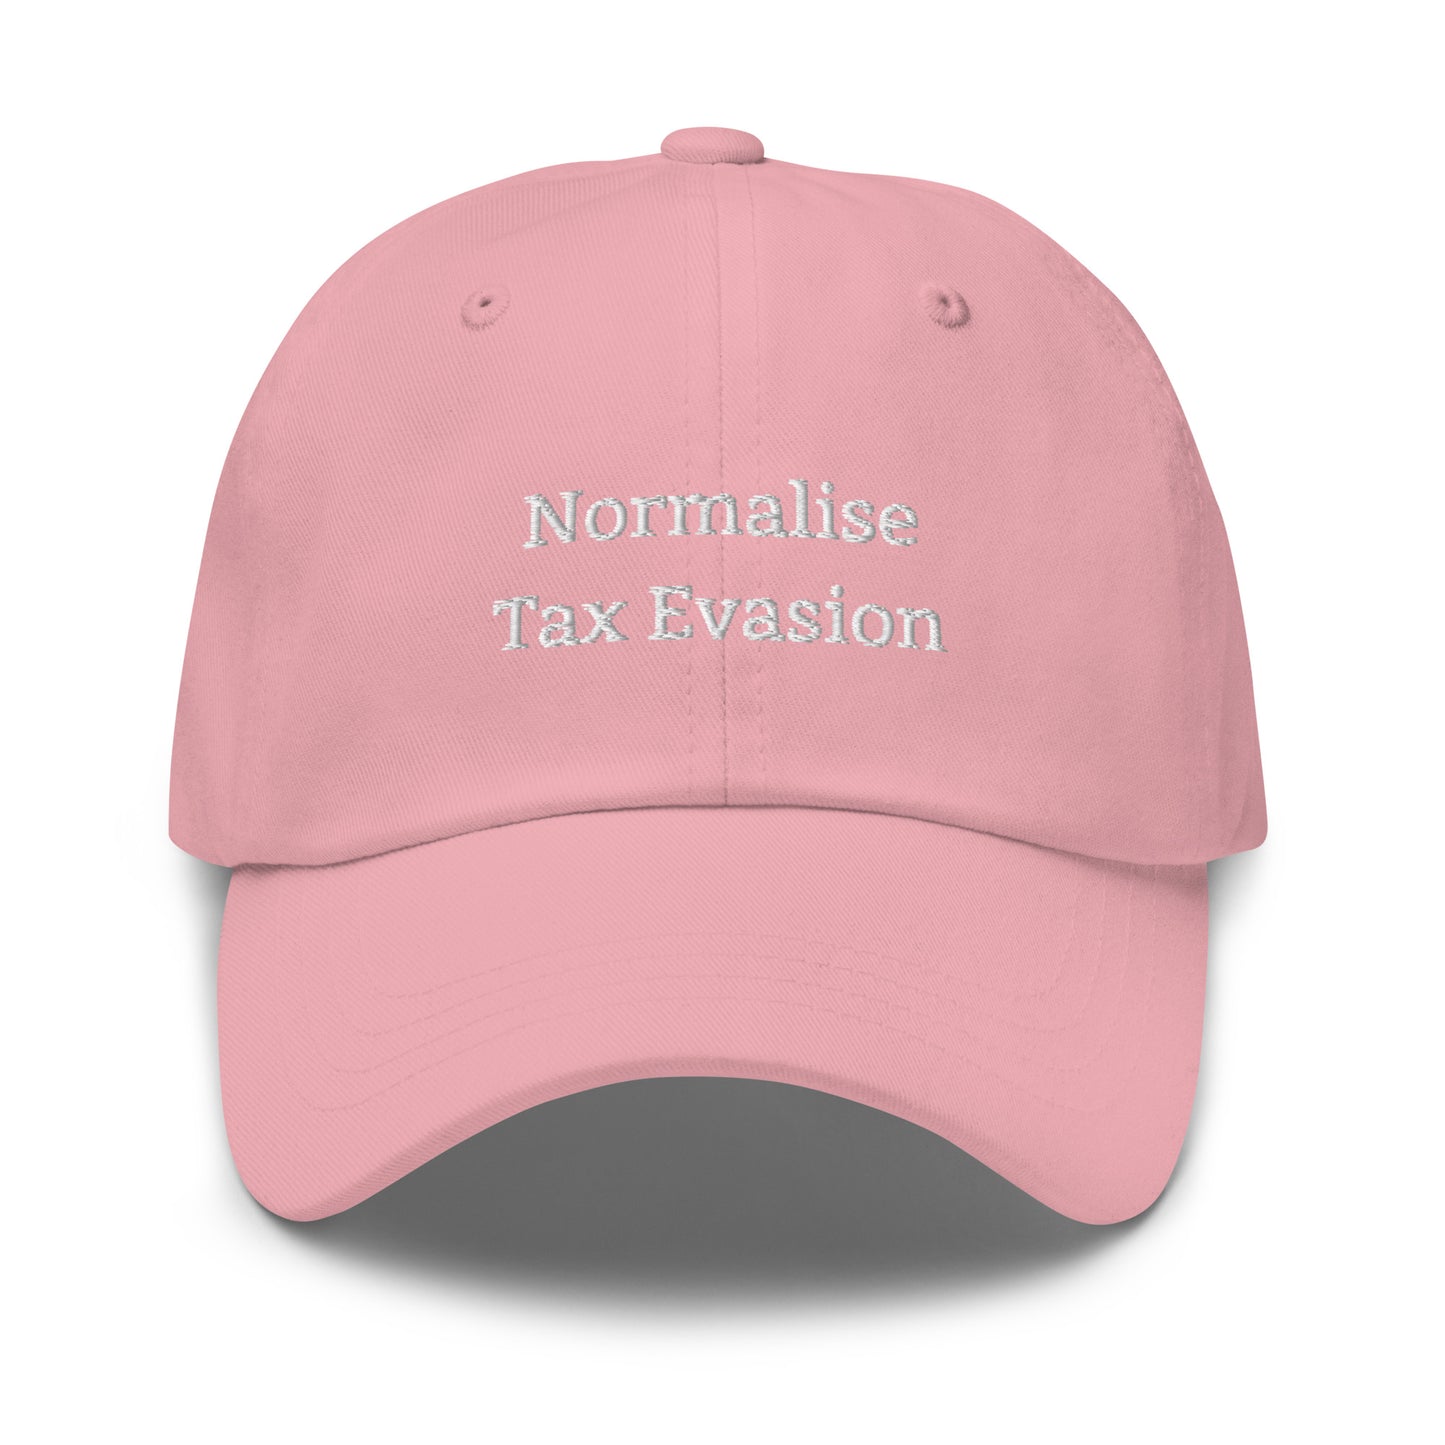 Tax Evasion Cap